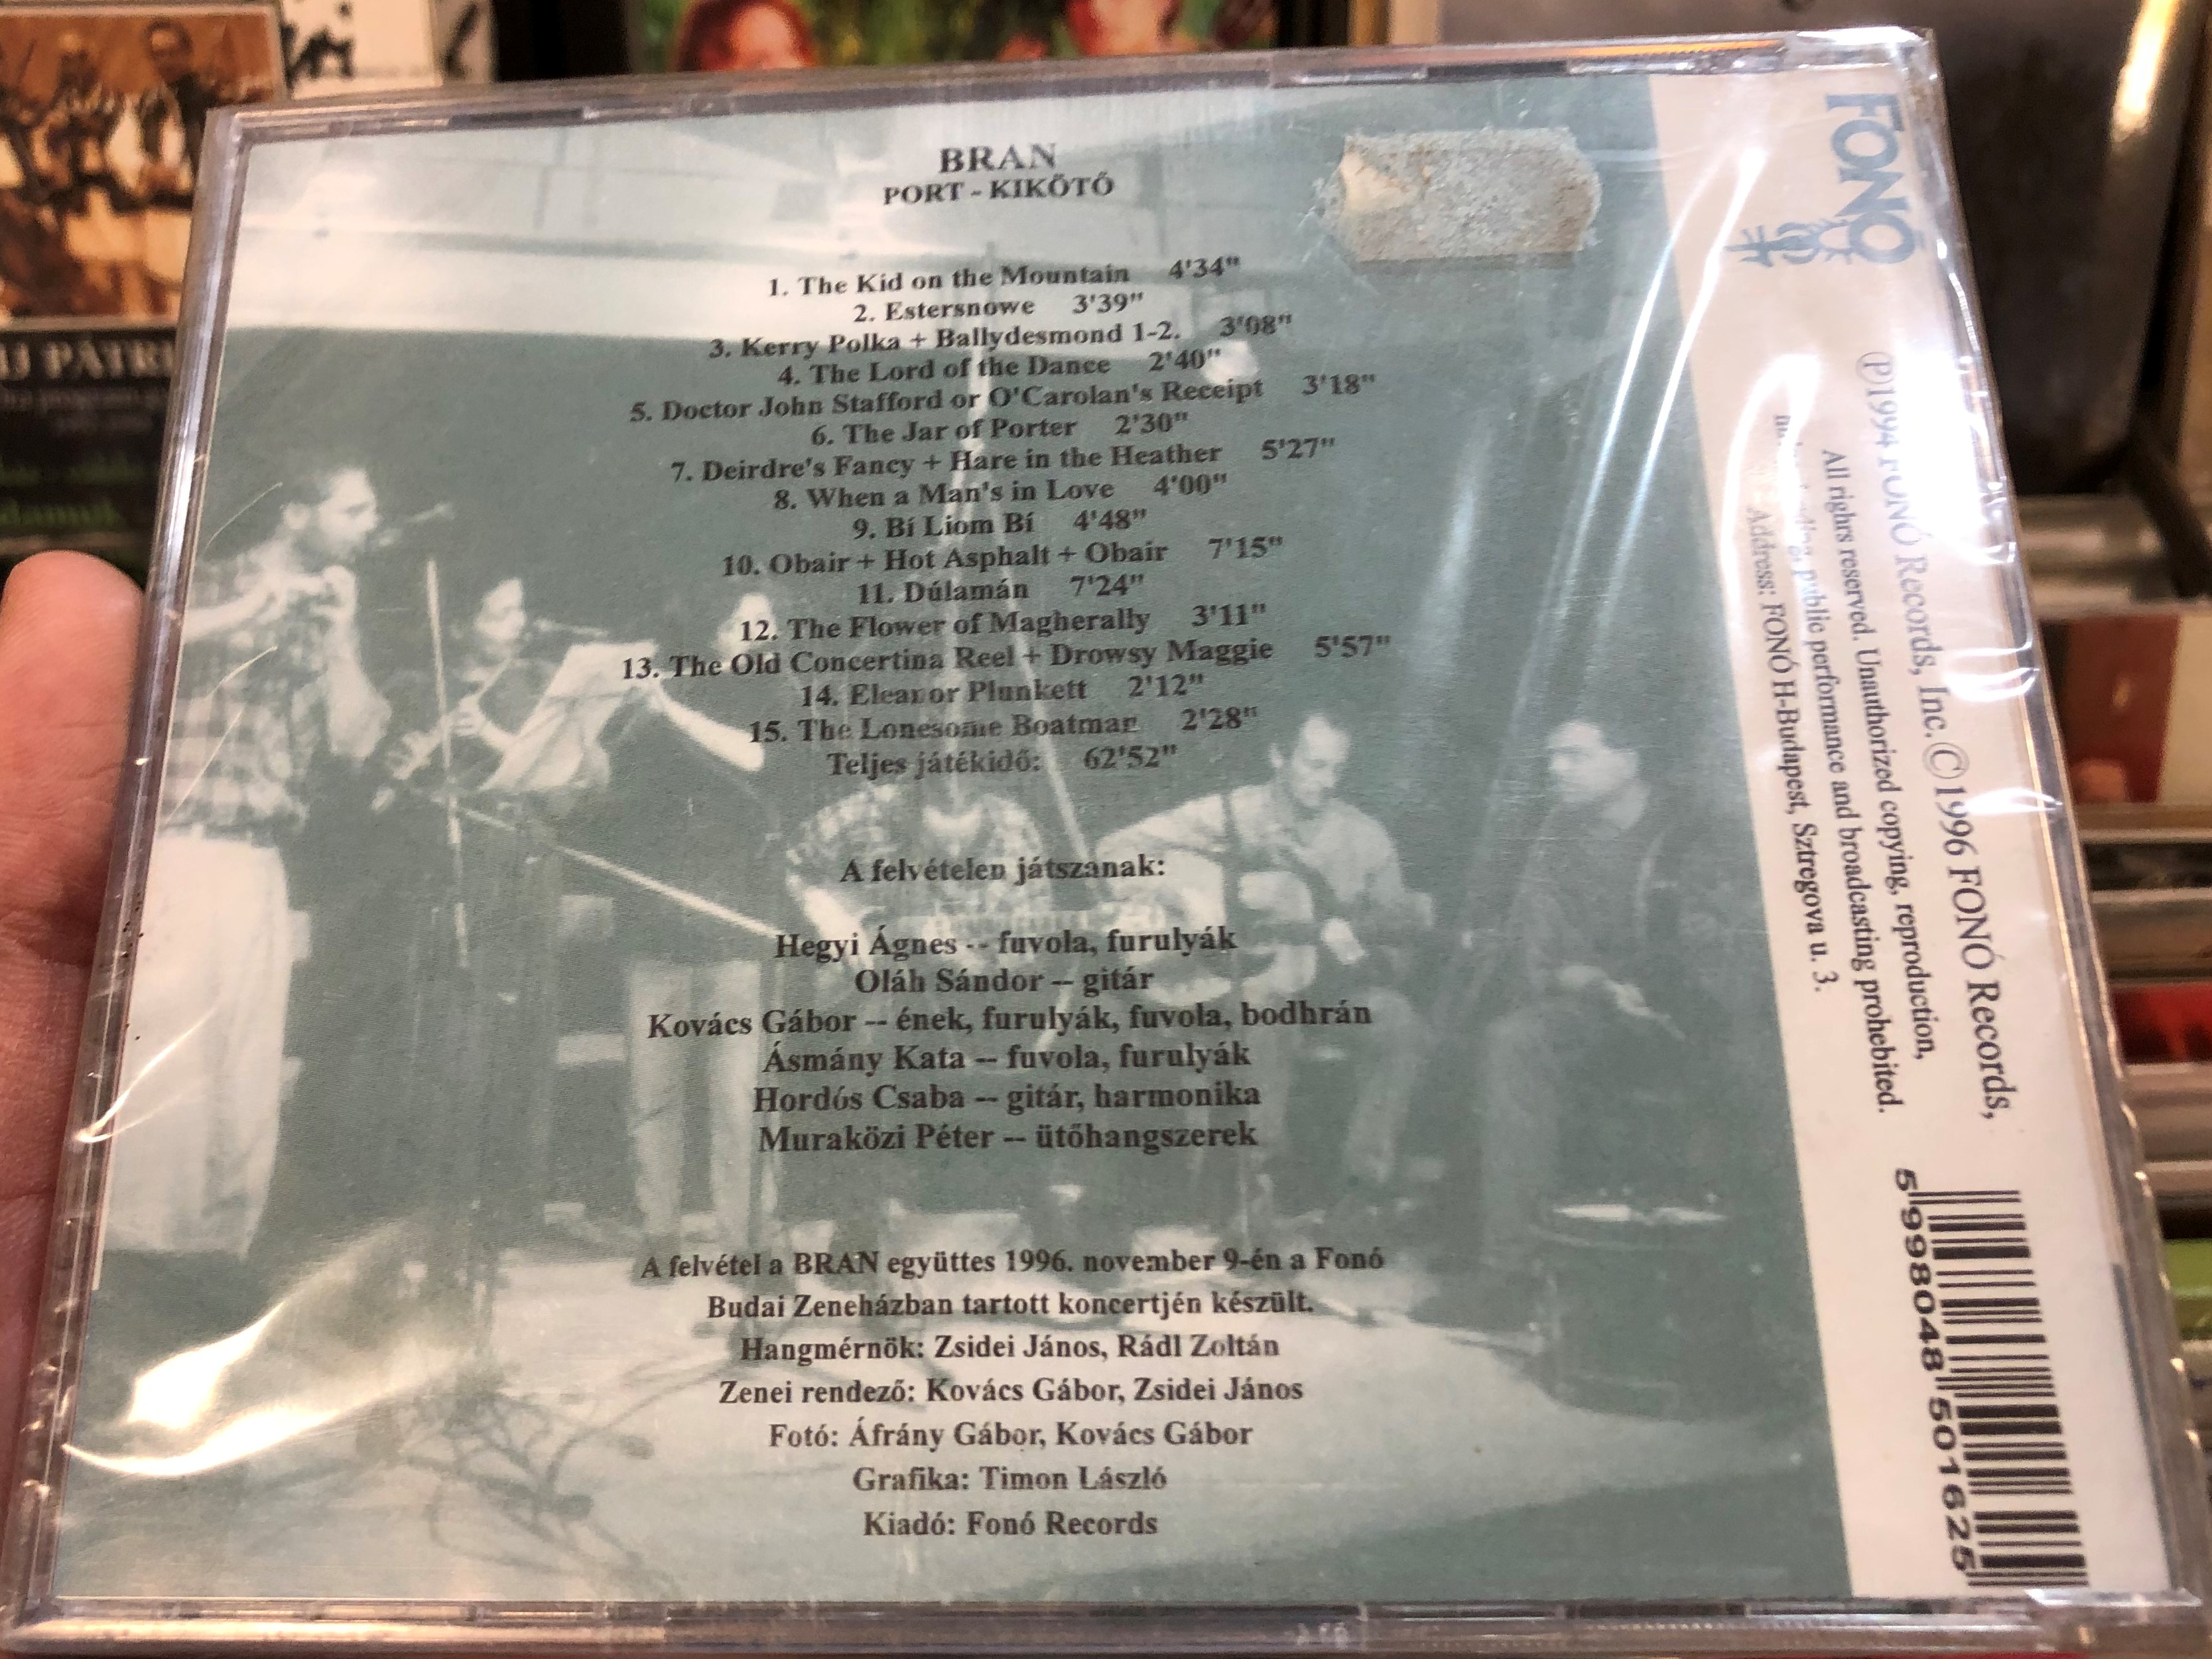 bran-port-kik-t-irish-traditional-music-ir-nepzene-fon-records-audio-cd-1996-fa-016-2-2-.jpg